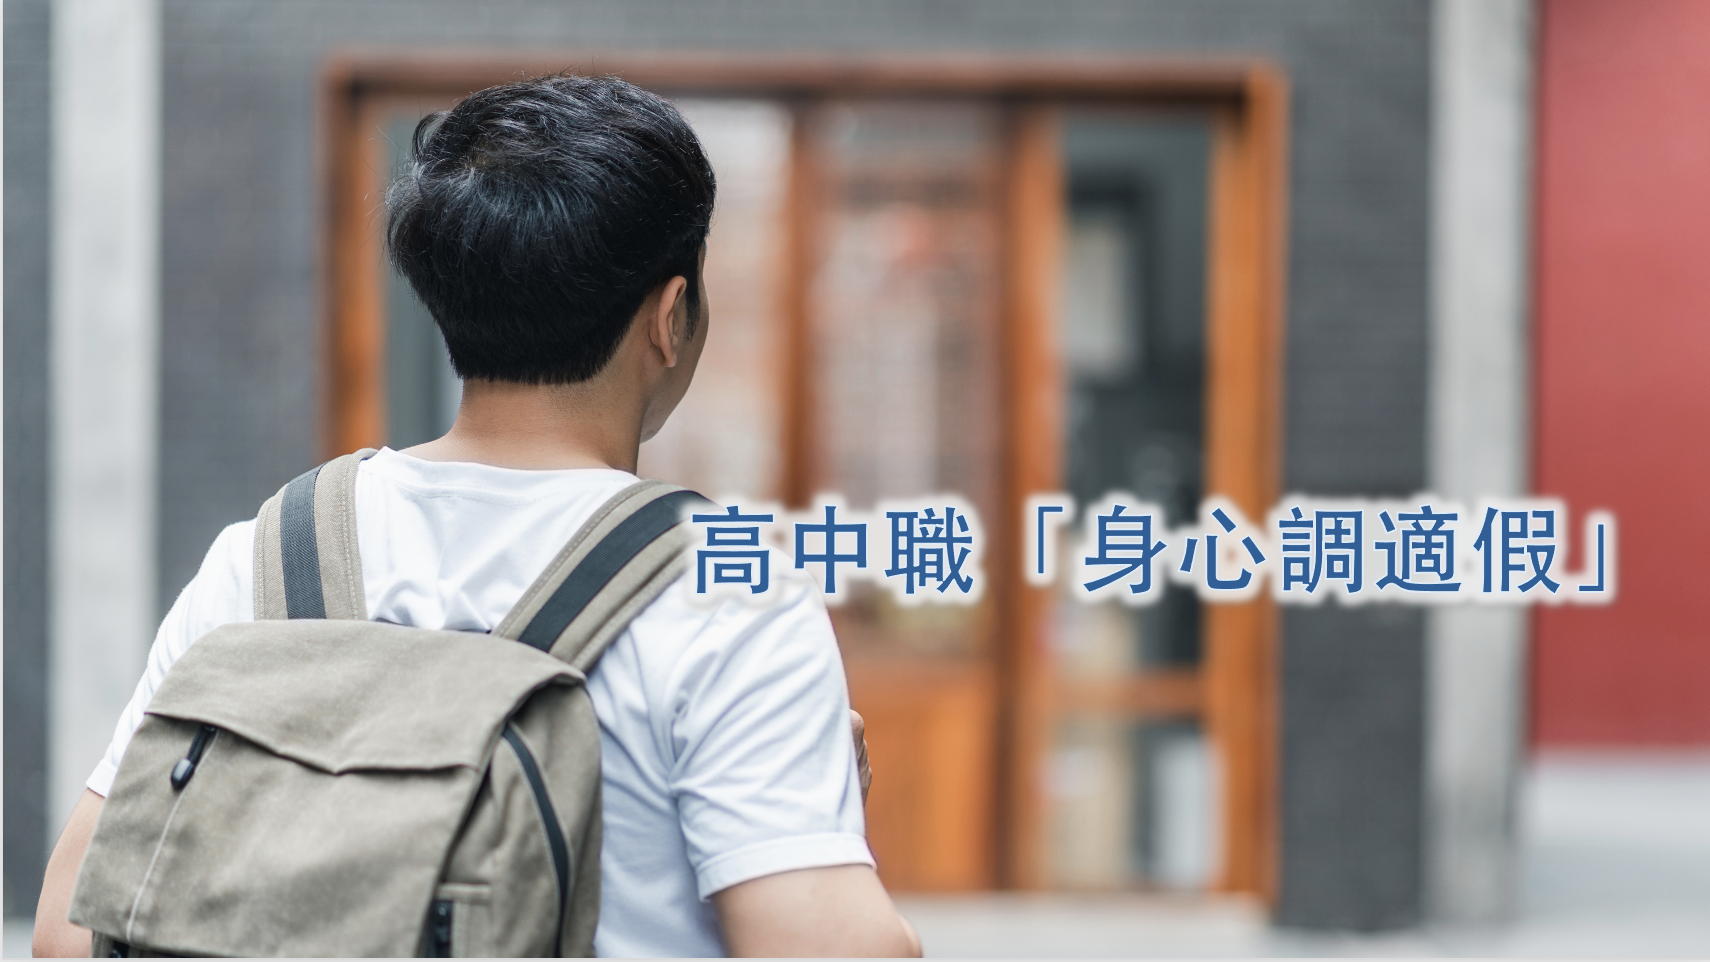 กระทรวงศึกษาฉะเชิงลงทุนเตรียมแก้ไข "วิธีการประเมินการเรียนรู้ของนักเรียนระดับมัธยมศึกษา" เมื่อวันที่ 1 กรกฎาคม (ภาพ: กลุ่มบรรณาธิการภาษาจีนของยี่ห้อเข้าพิพากษ์)